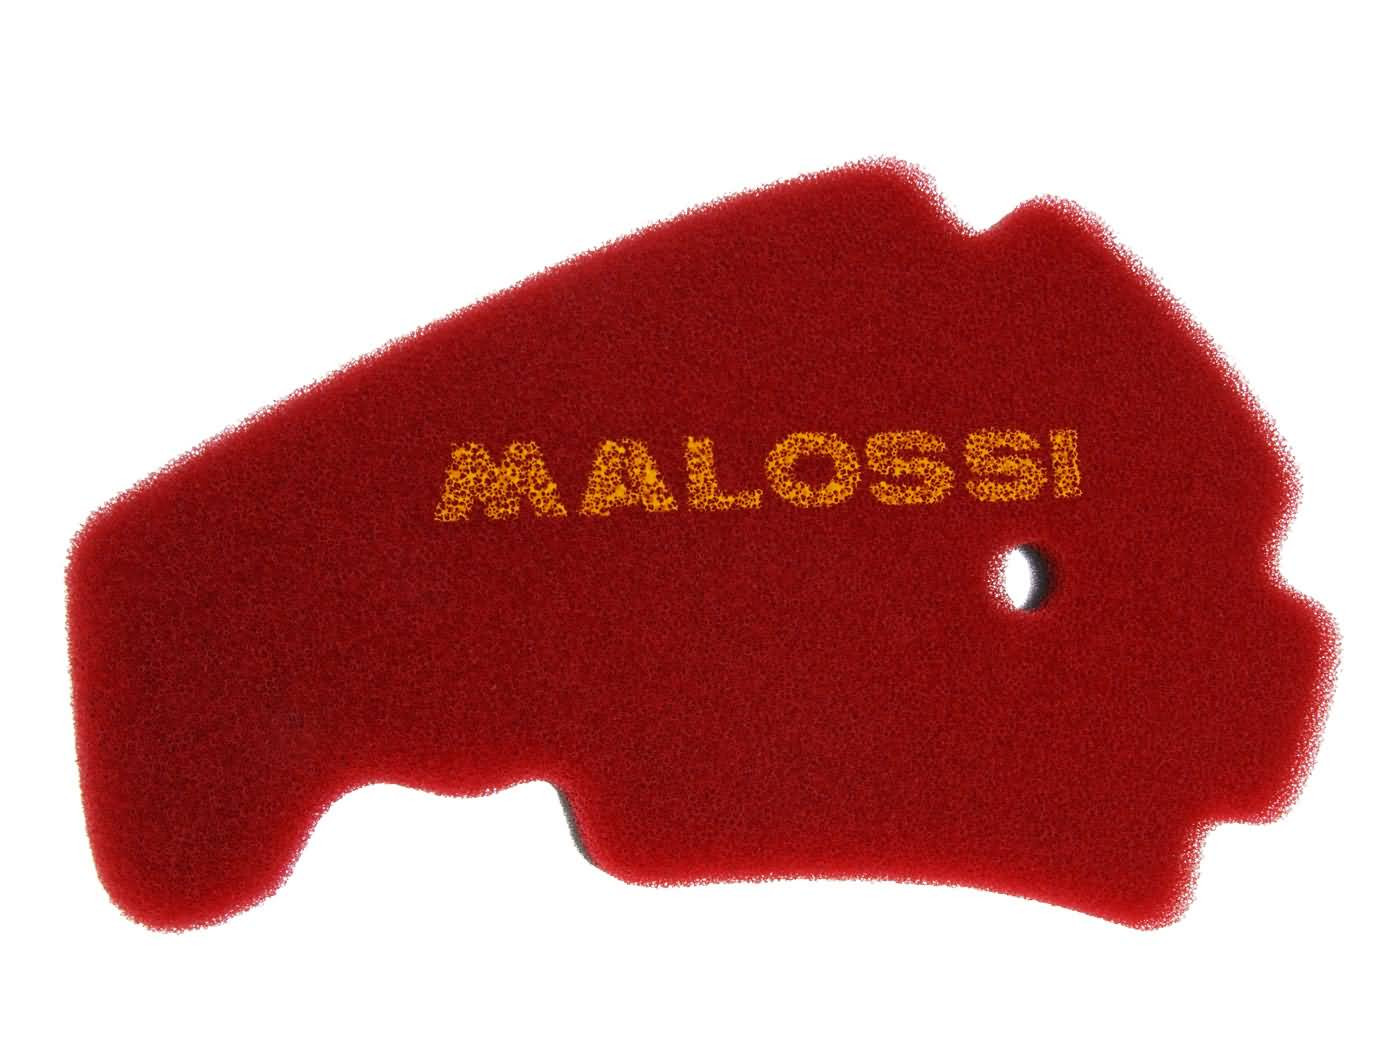 Malossi kétrétegű piros légszűrőbetét - Aprilia, Derbi, Gilera, Peugeot, Piaggio